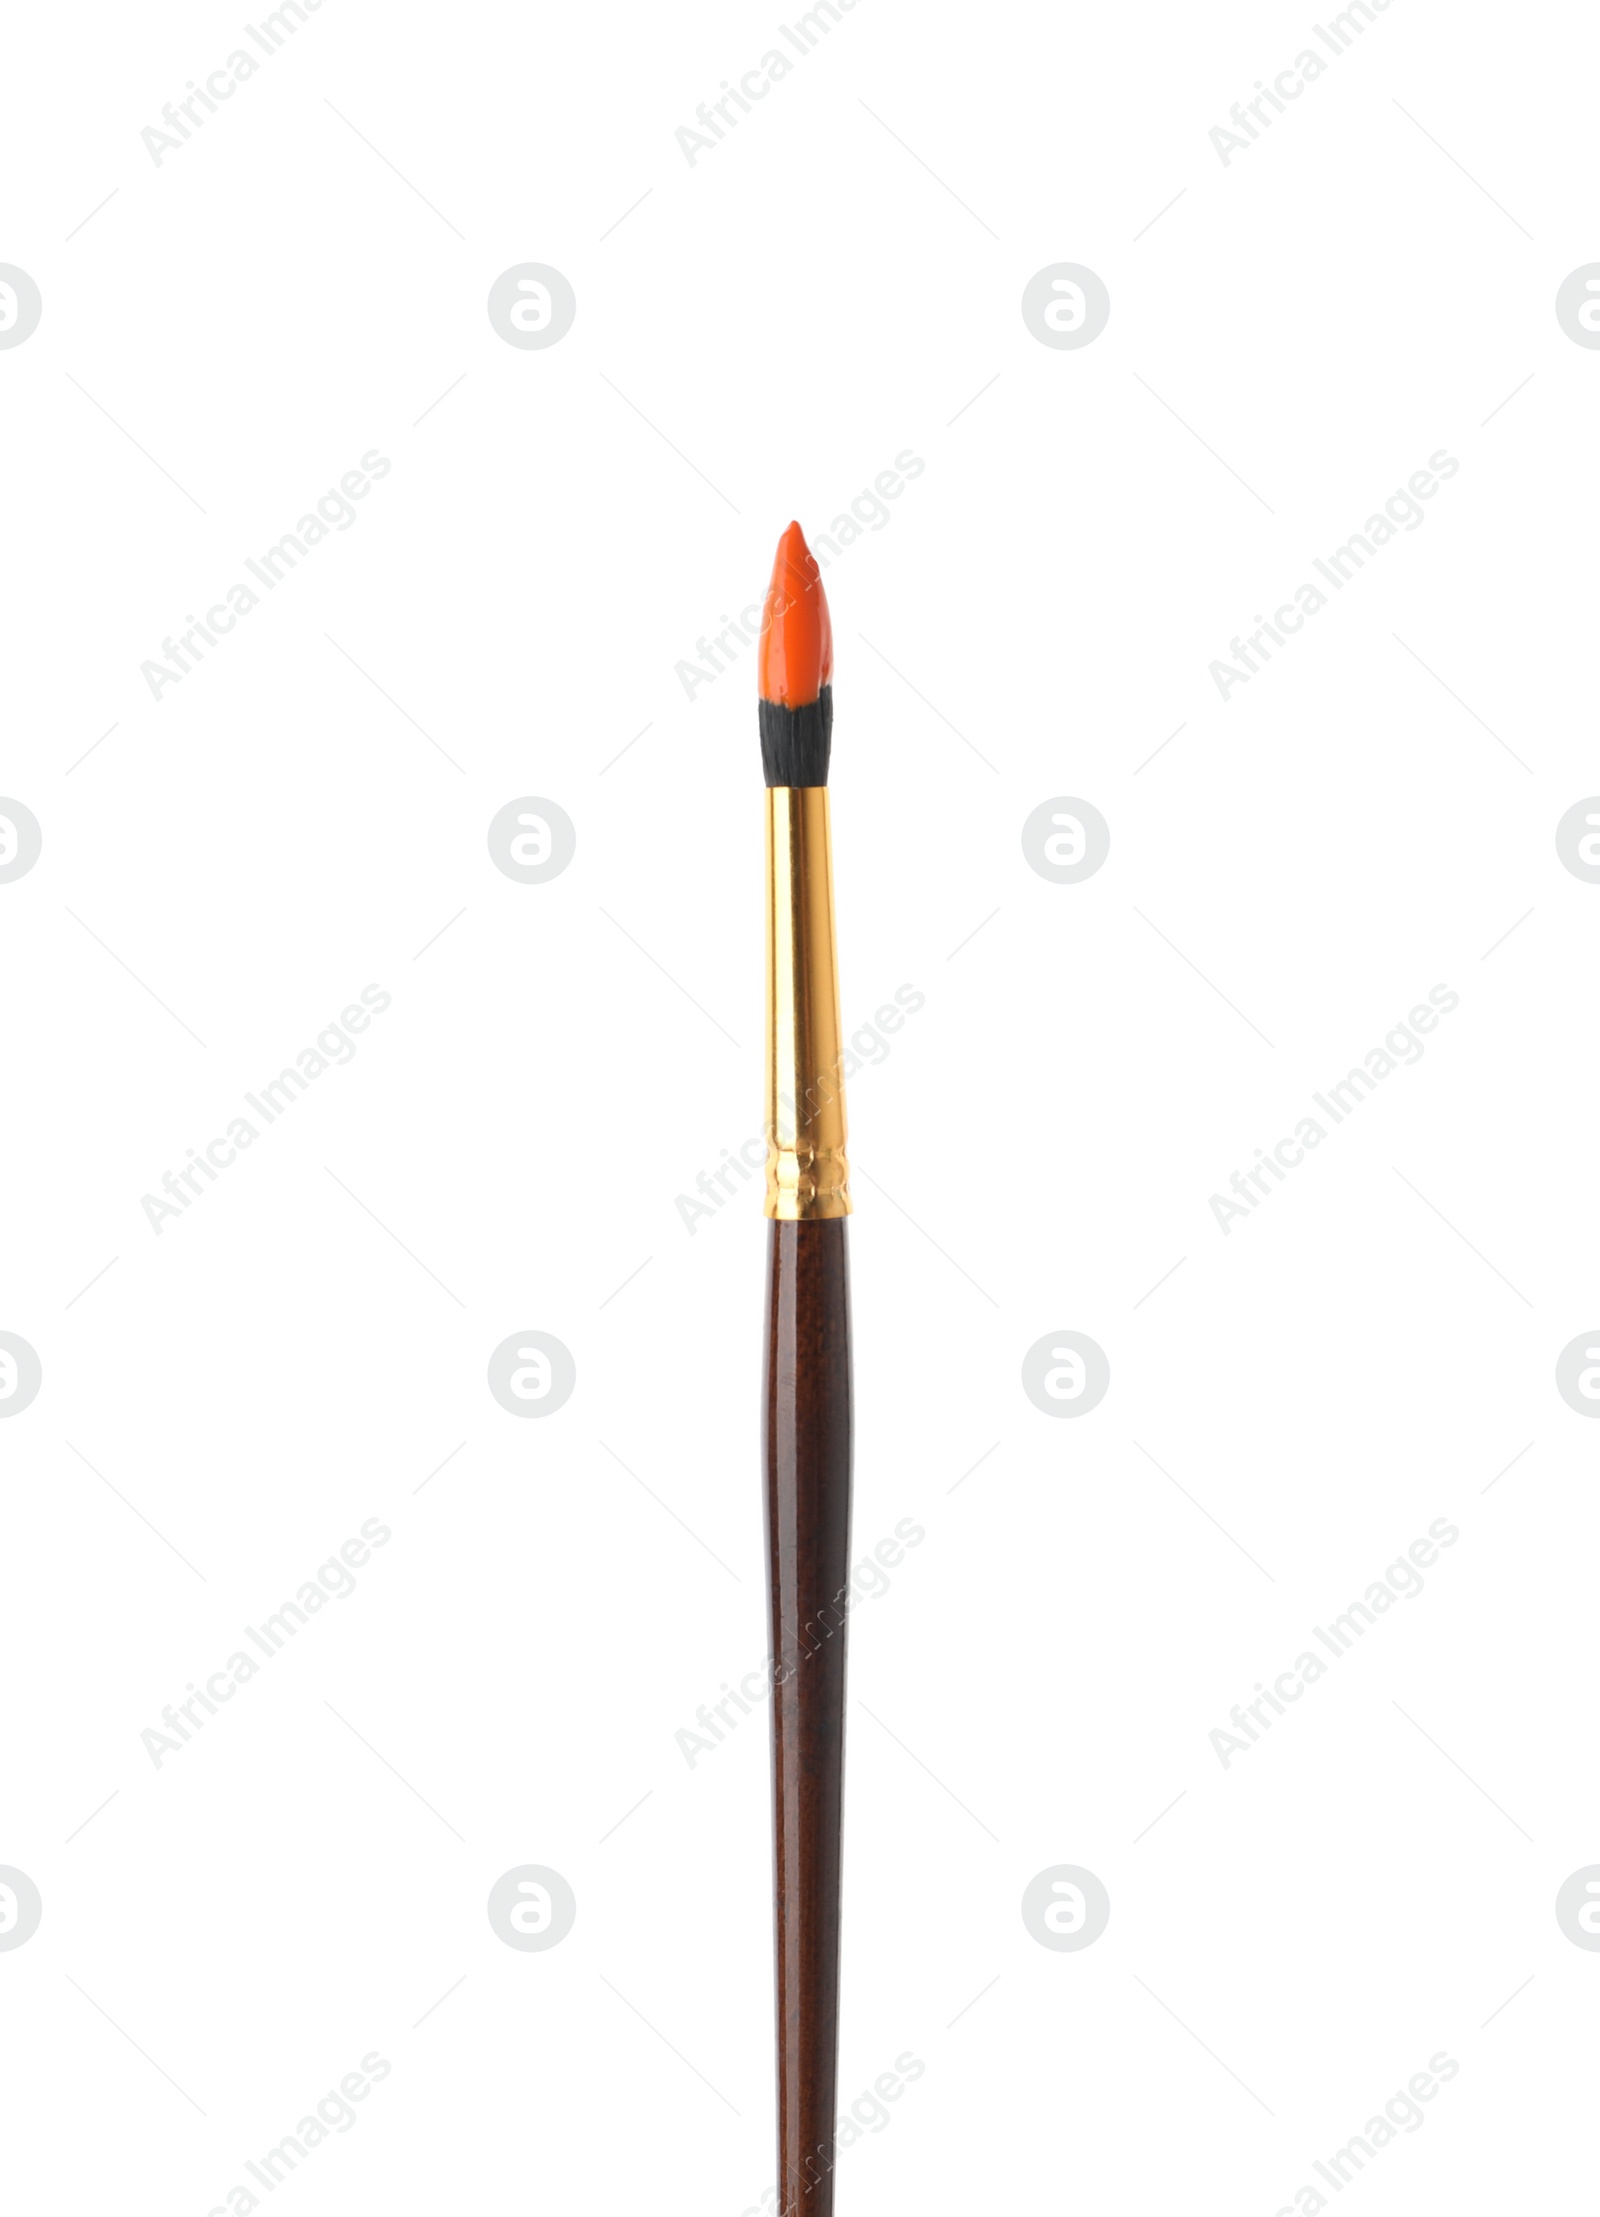 Photo of Brush with orange paint isolated on white